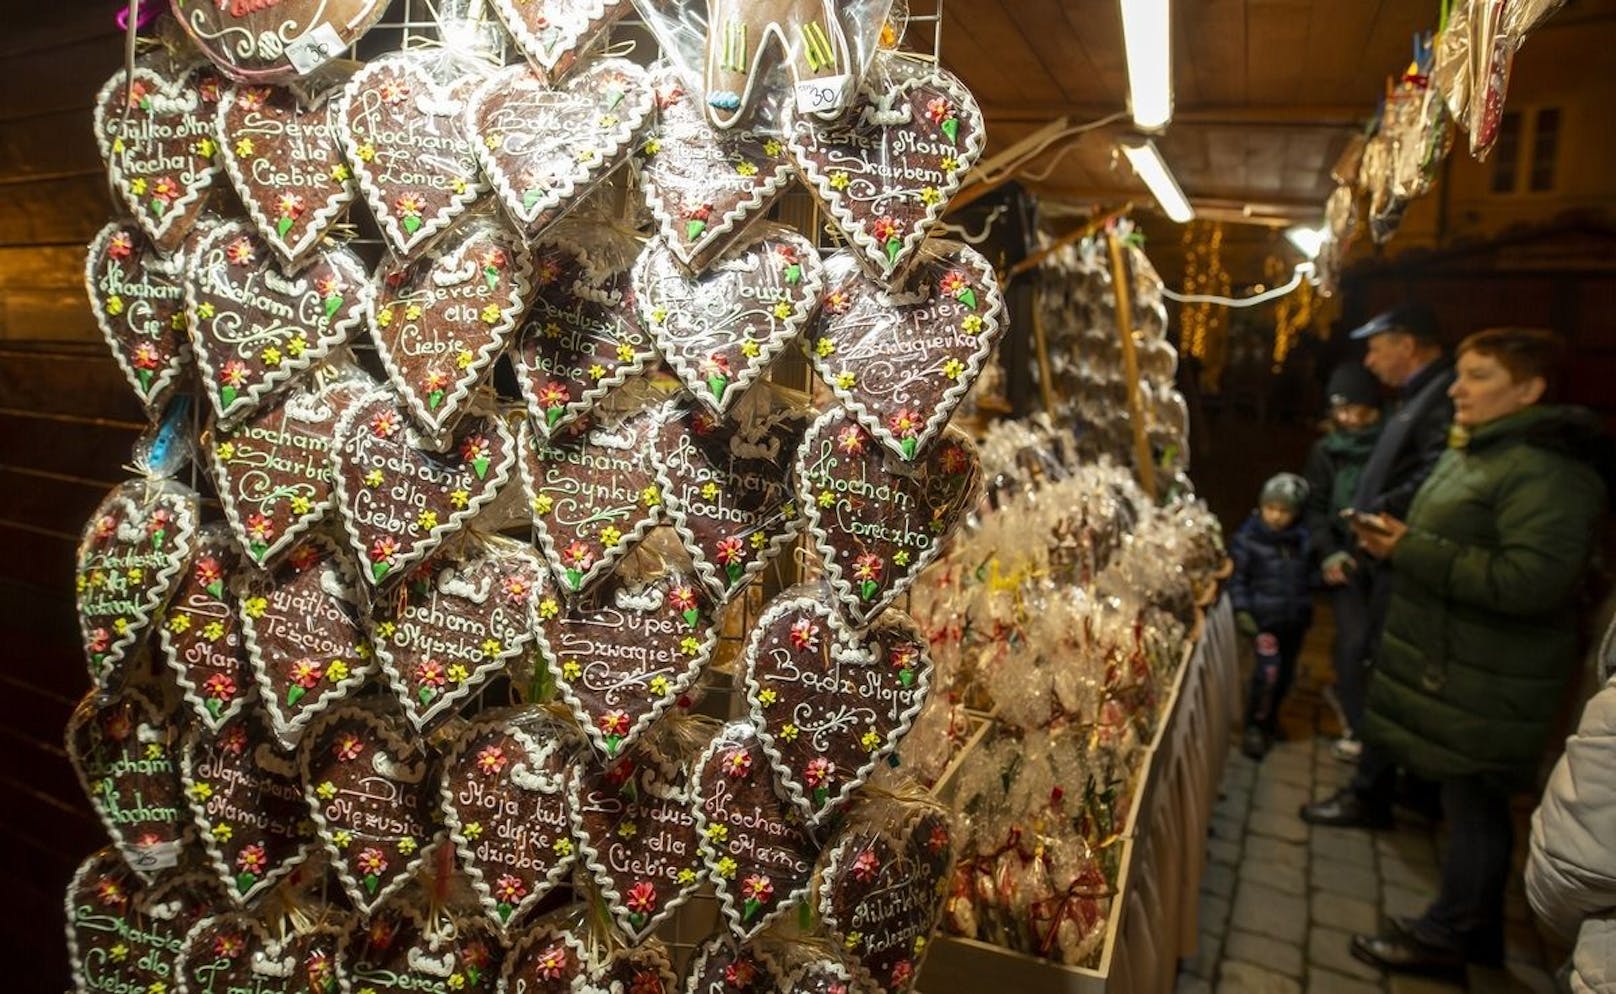 Lebkuchen mit Guss, regionale Käsesorten, Kirschlikör - all das und noch vieles mehr finden Sie auf dem feierlich geschmückten Weihnachtsmarkt von Wroclaw.